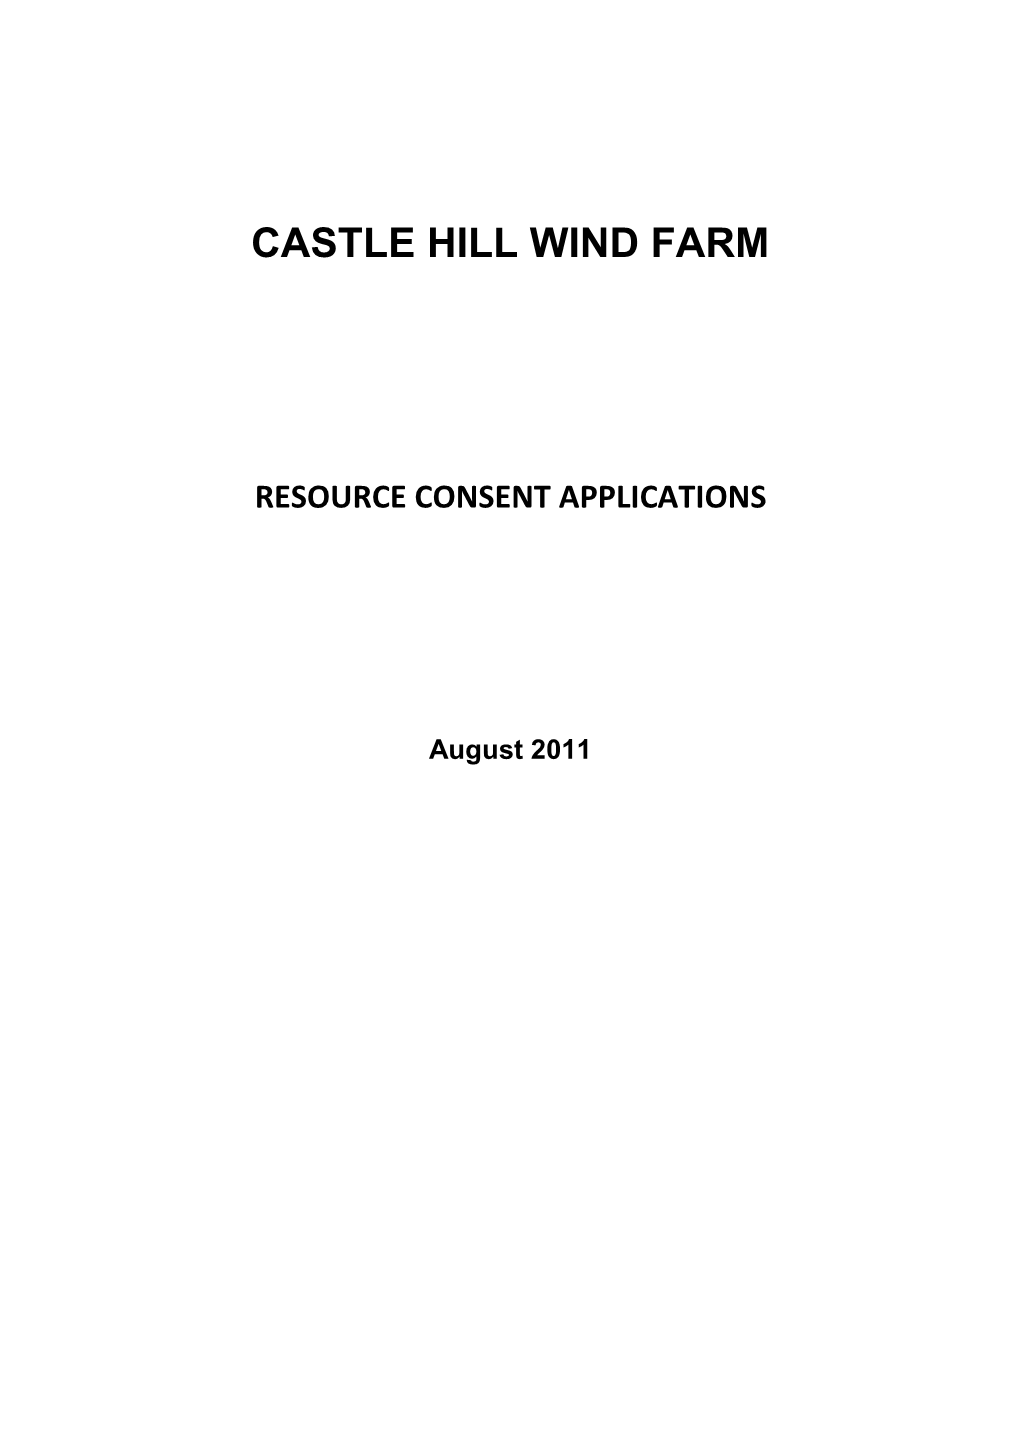 Castle Hill Wind Farm